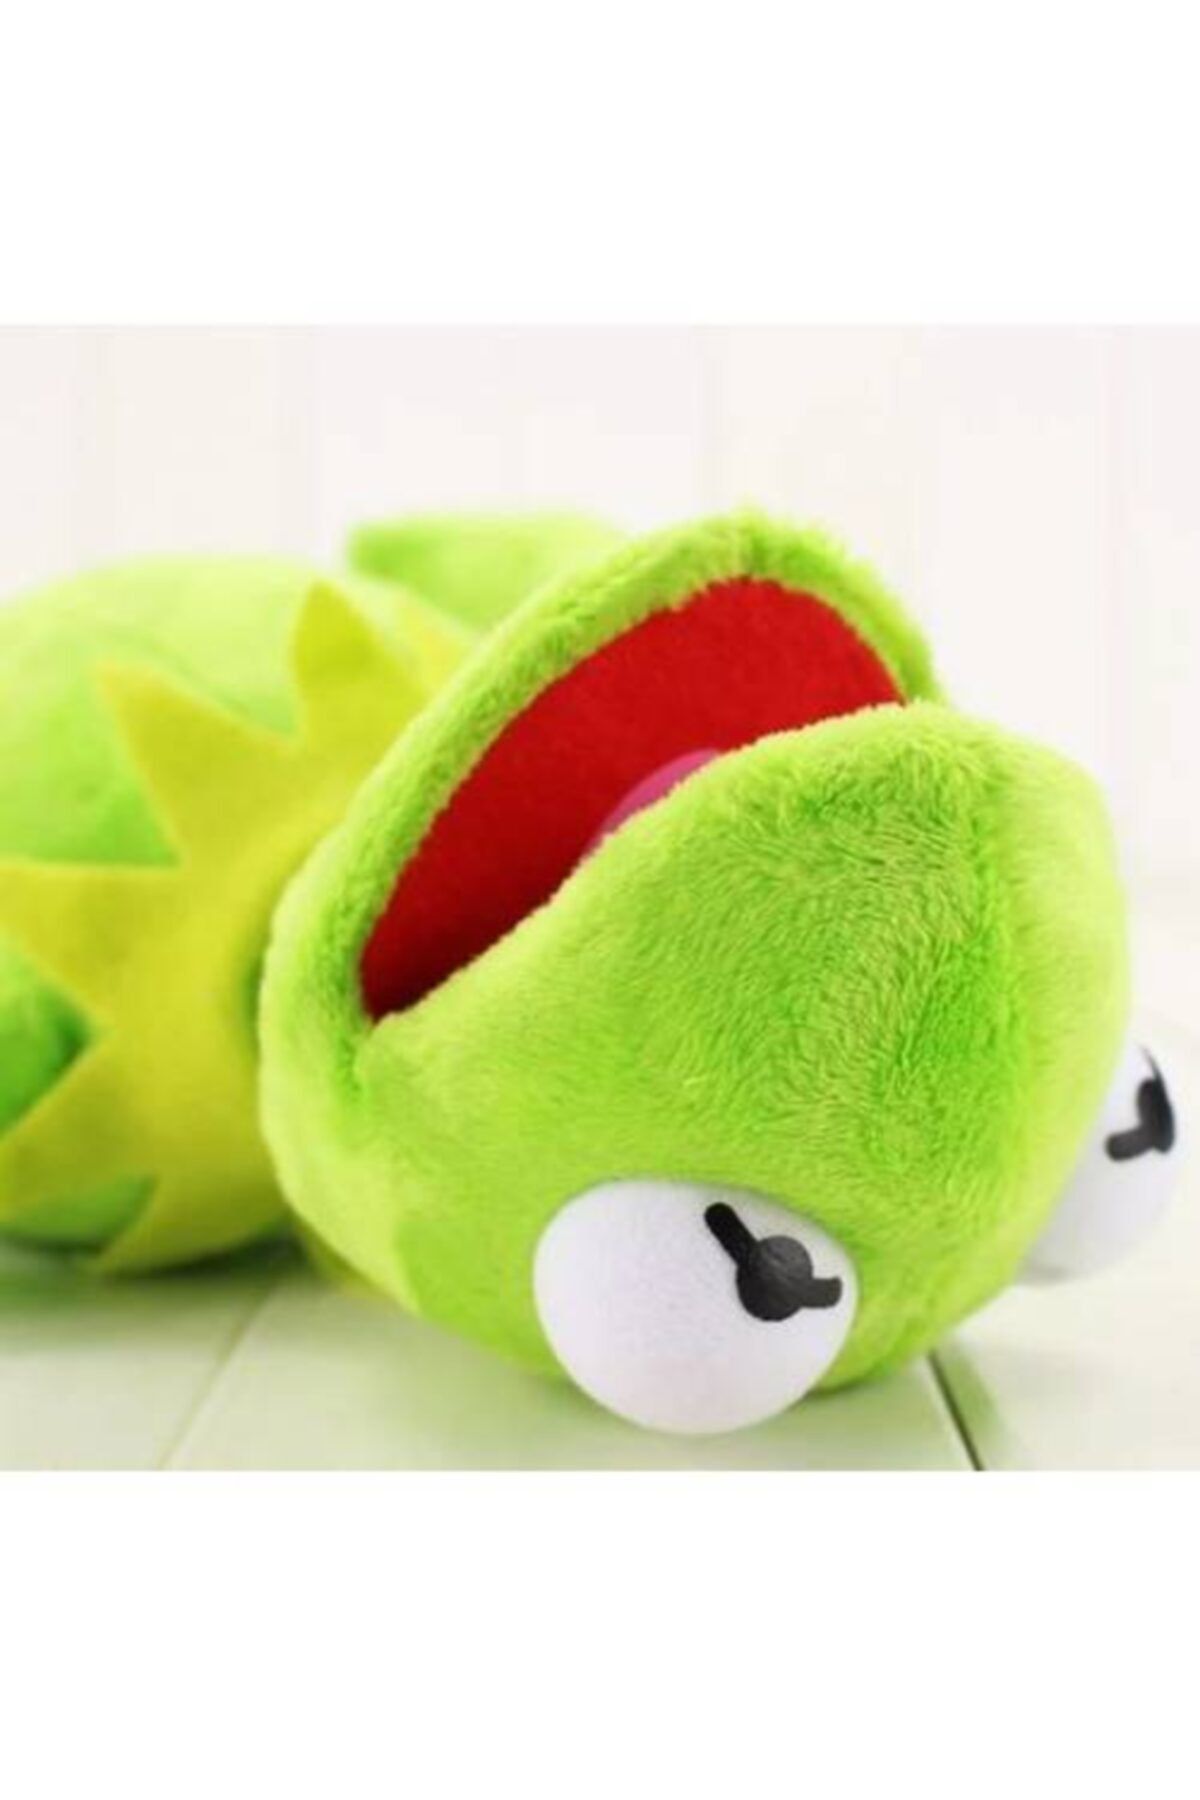 Schulzz Susam Sokağı Kurbağa Kermit Peluş Oyuncak 41cm - 5